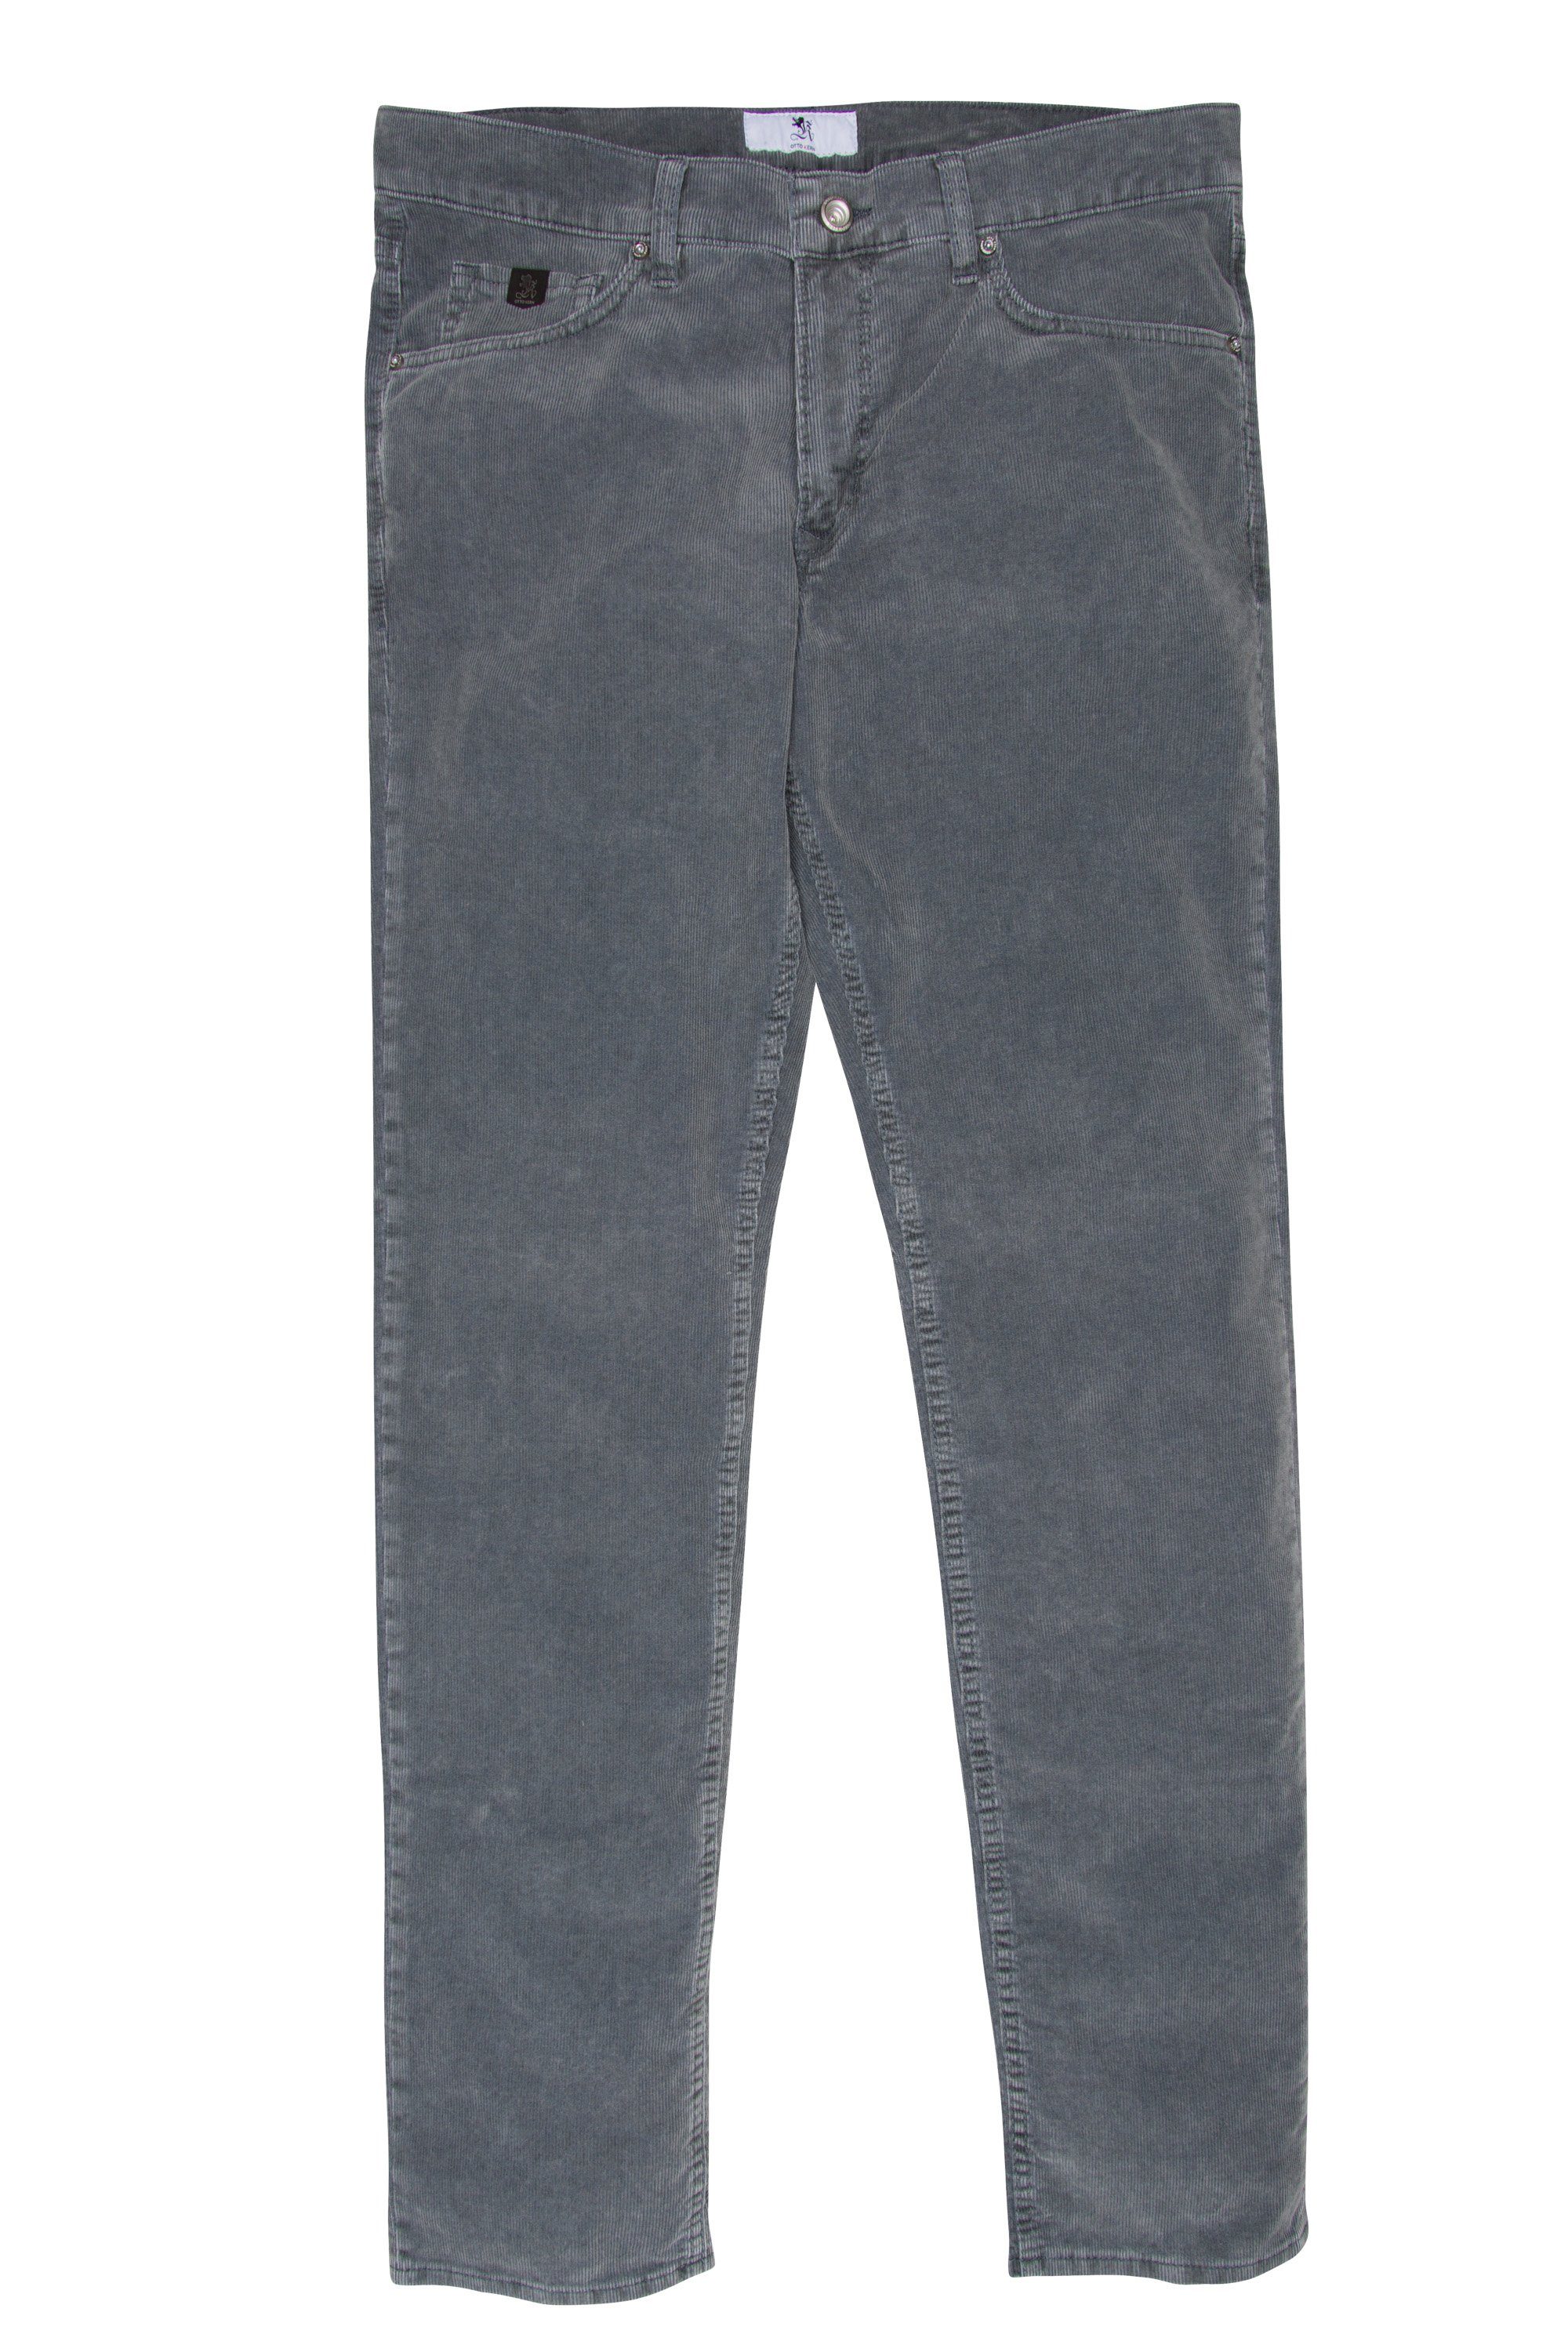 Kern 5-Pocket-Jeans OTTO KERN steel RAY 67014 3201.9007